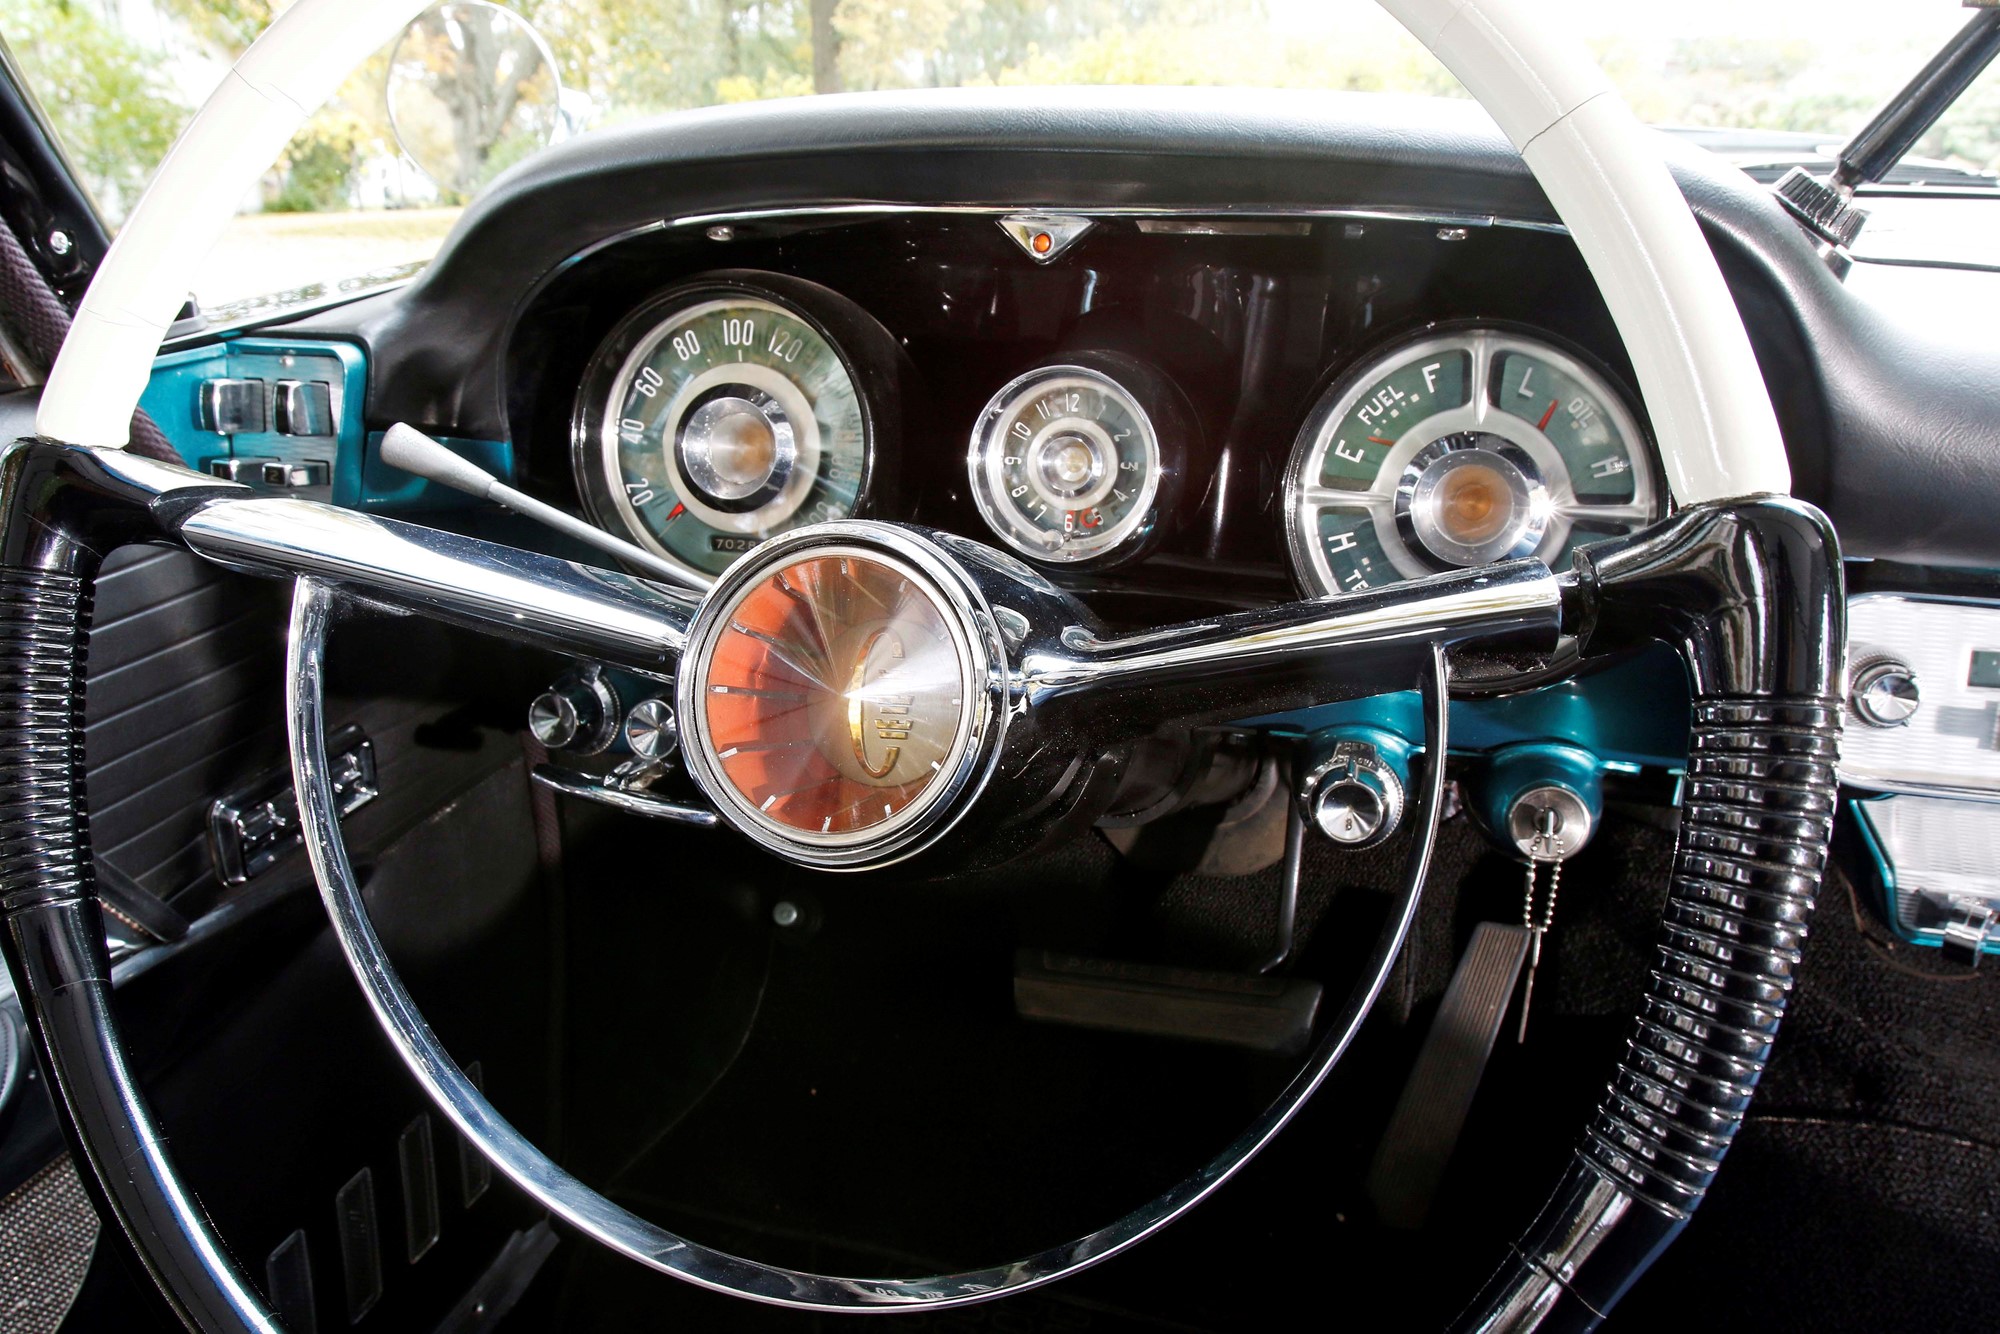 Servostyrning var standard på alla modeller utom Windsor. Även klockan som sitter mellan de stora mätarna ingick när man köpte en ny Chrysler.